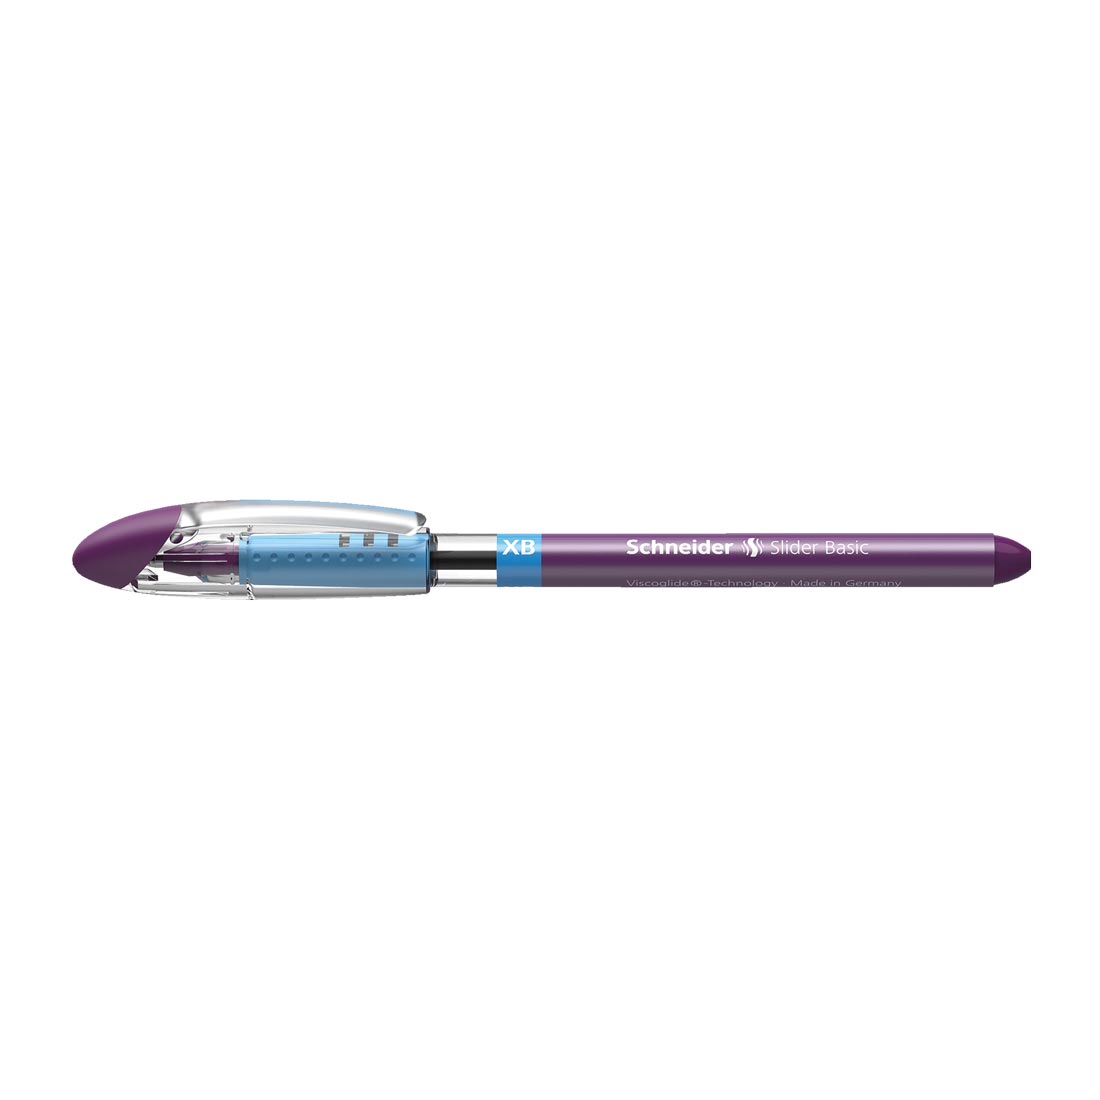 Slider BASIC Ballpoint Pens XB, Box of 10#ink-color_violet